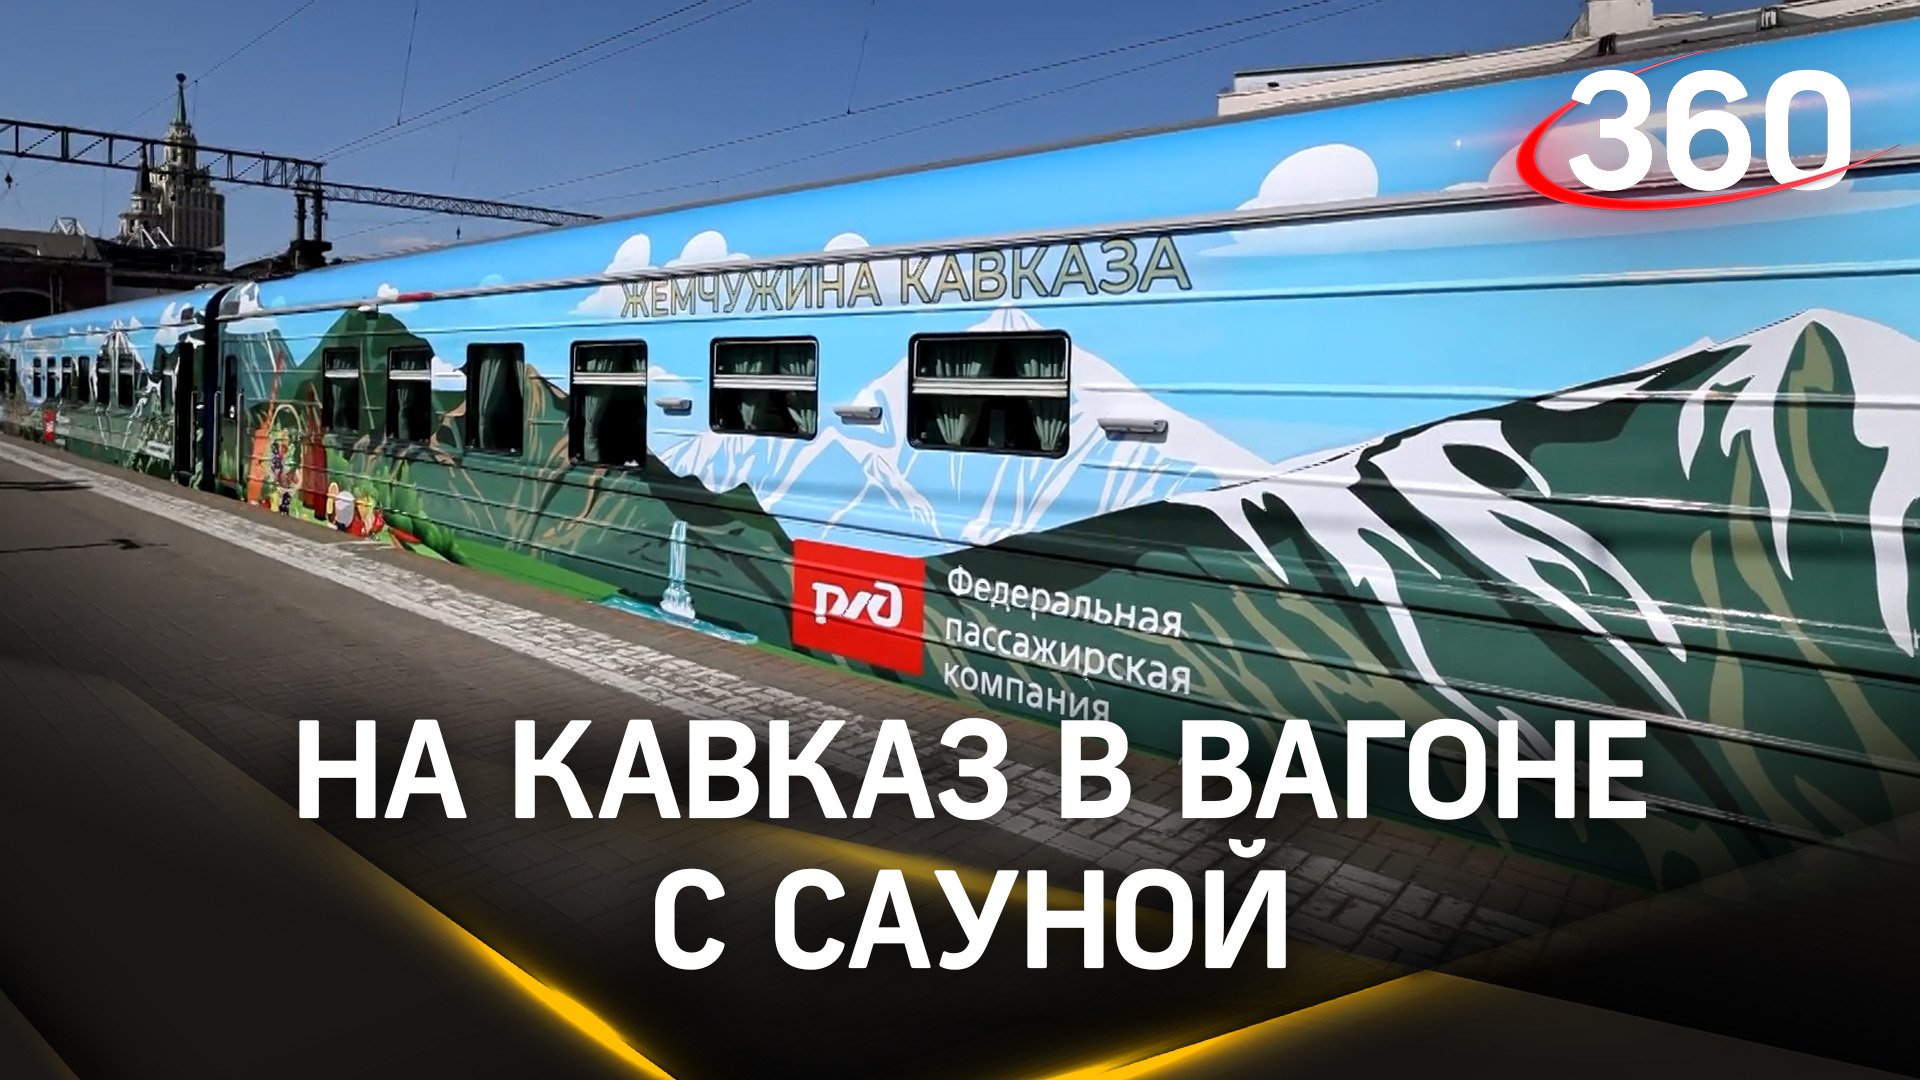 Видео: спа-салон в поезде «Кавказская жемчужина» - сауна, лезгинка и шашлык